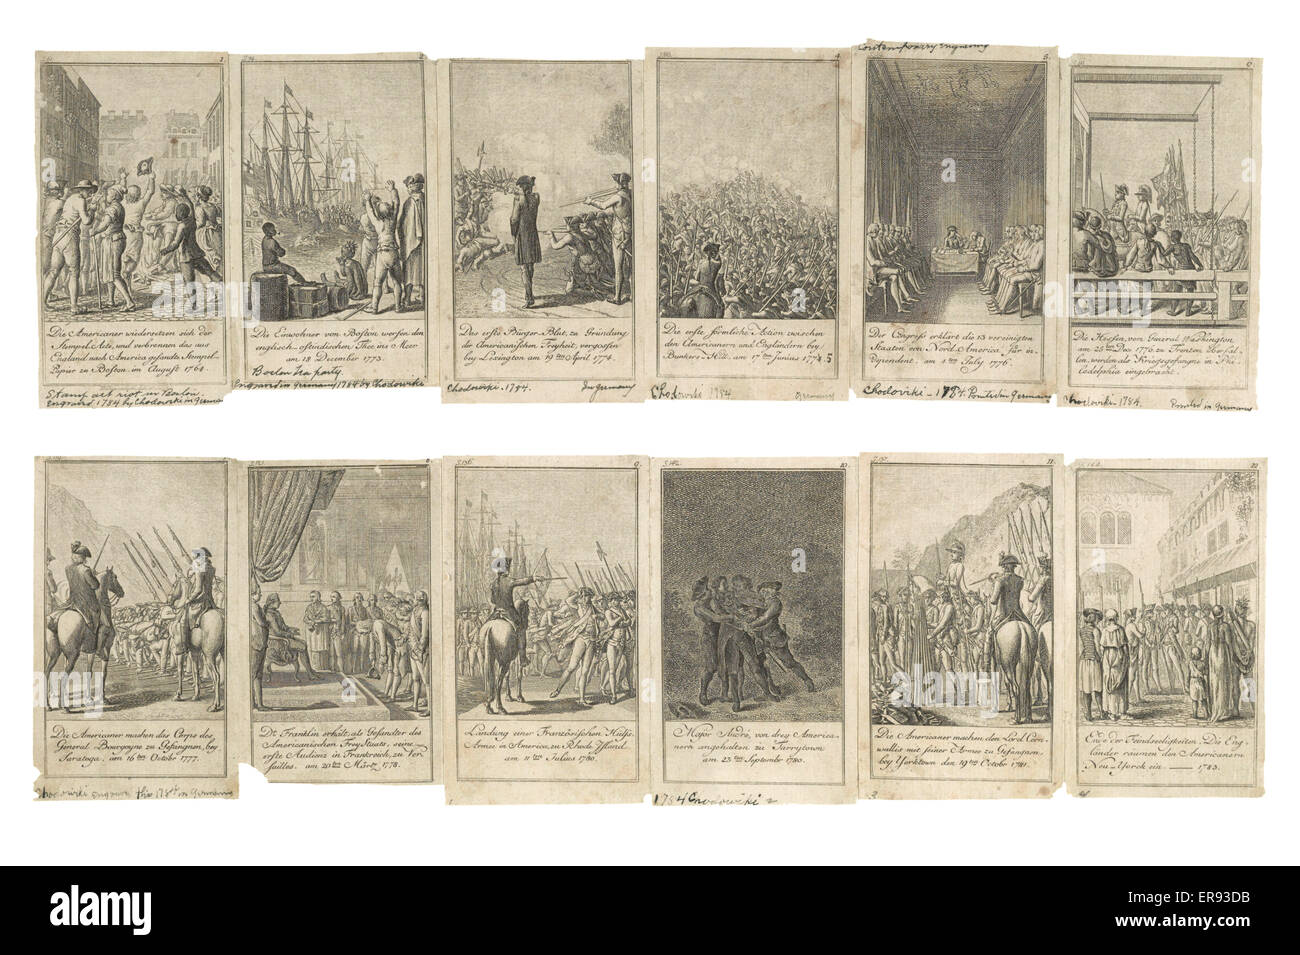 Szenen von Ereignisse und Kämpfe bis zur und während der amerikanischen Revolution, 1775-1783, 12 Abbildungen dargestellt. Datum, 1784. Stockfoto